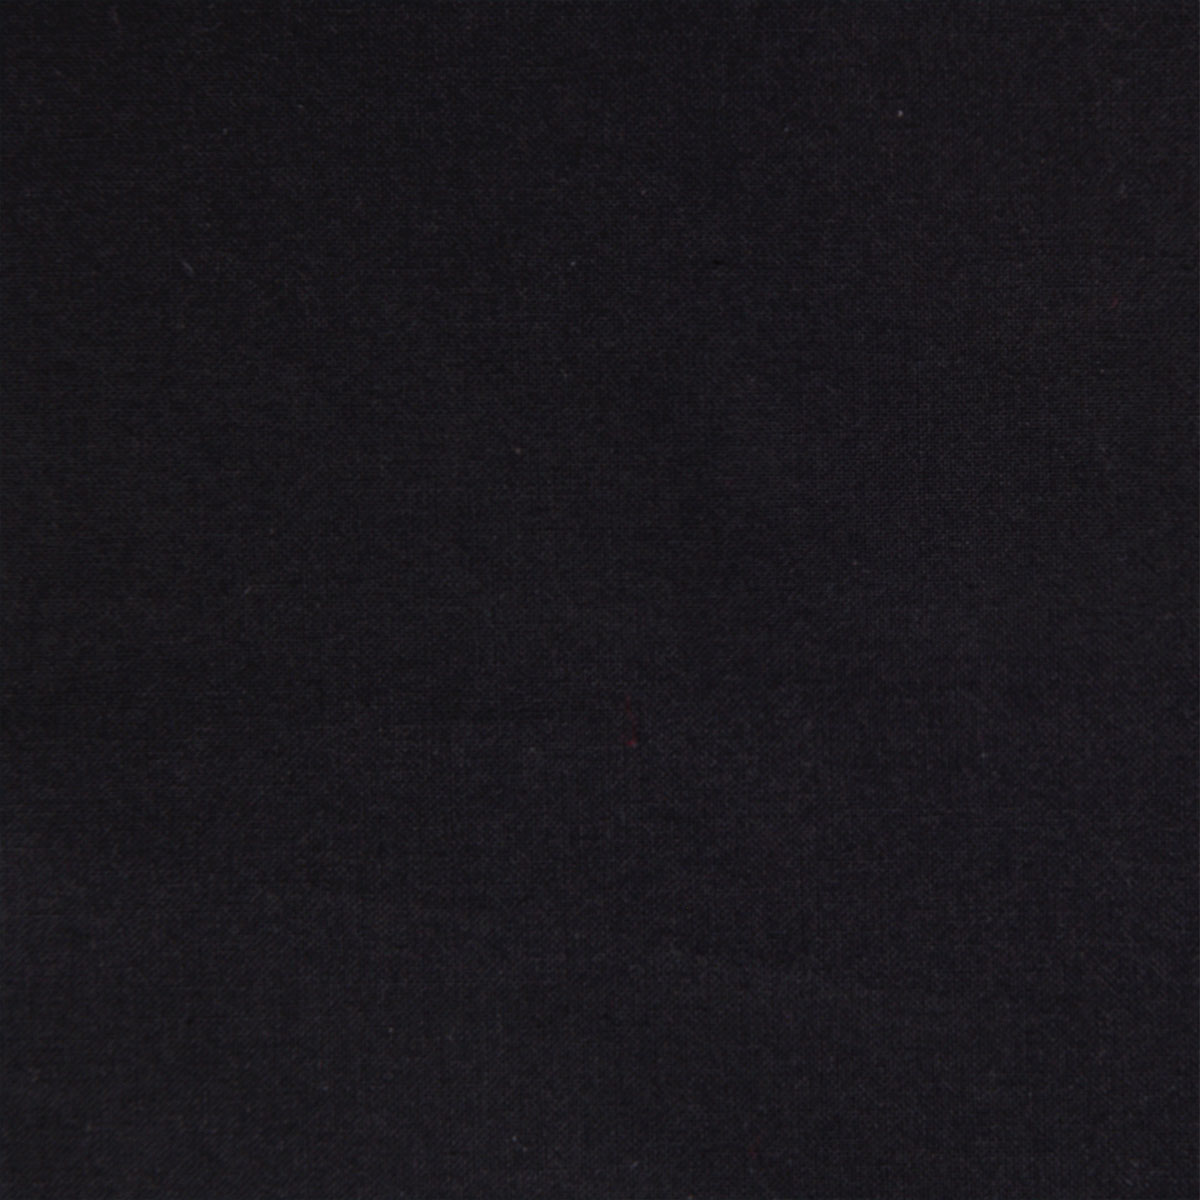 Dekostoff Freiberg schwarz in 1,6m Breite (METERWARE) Baumwollstoff Stoff aus 100% Baumwolle